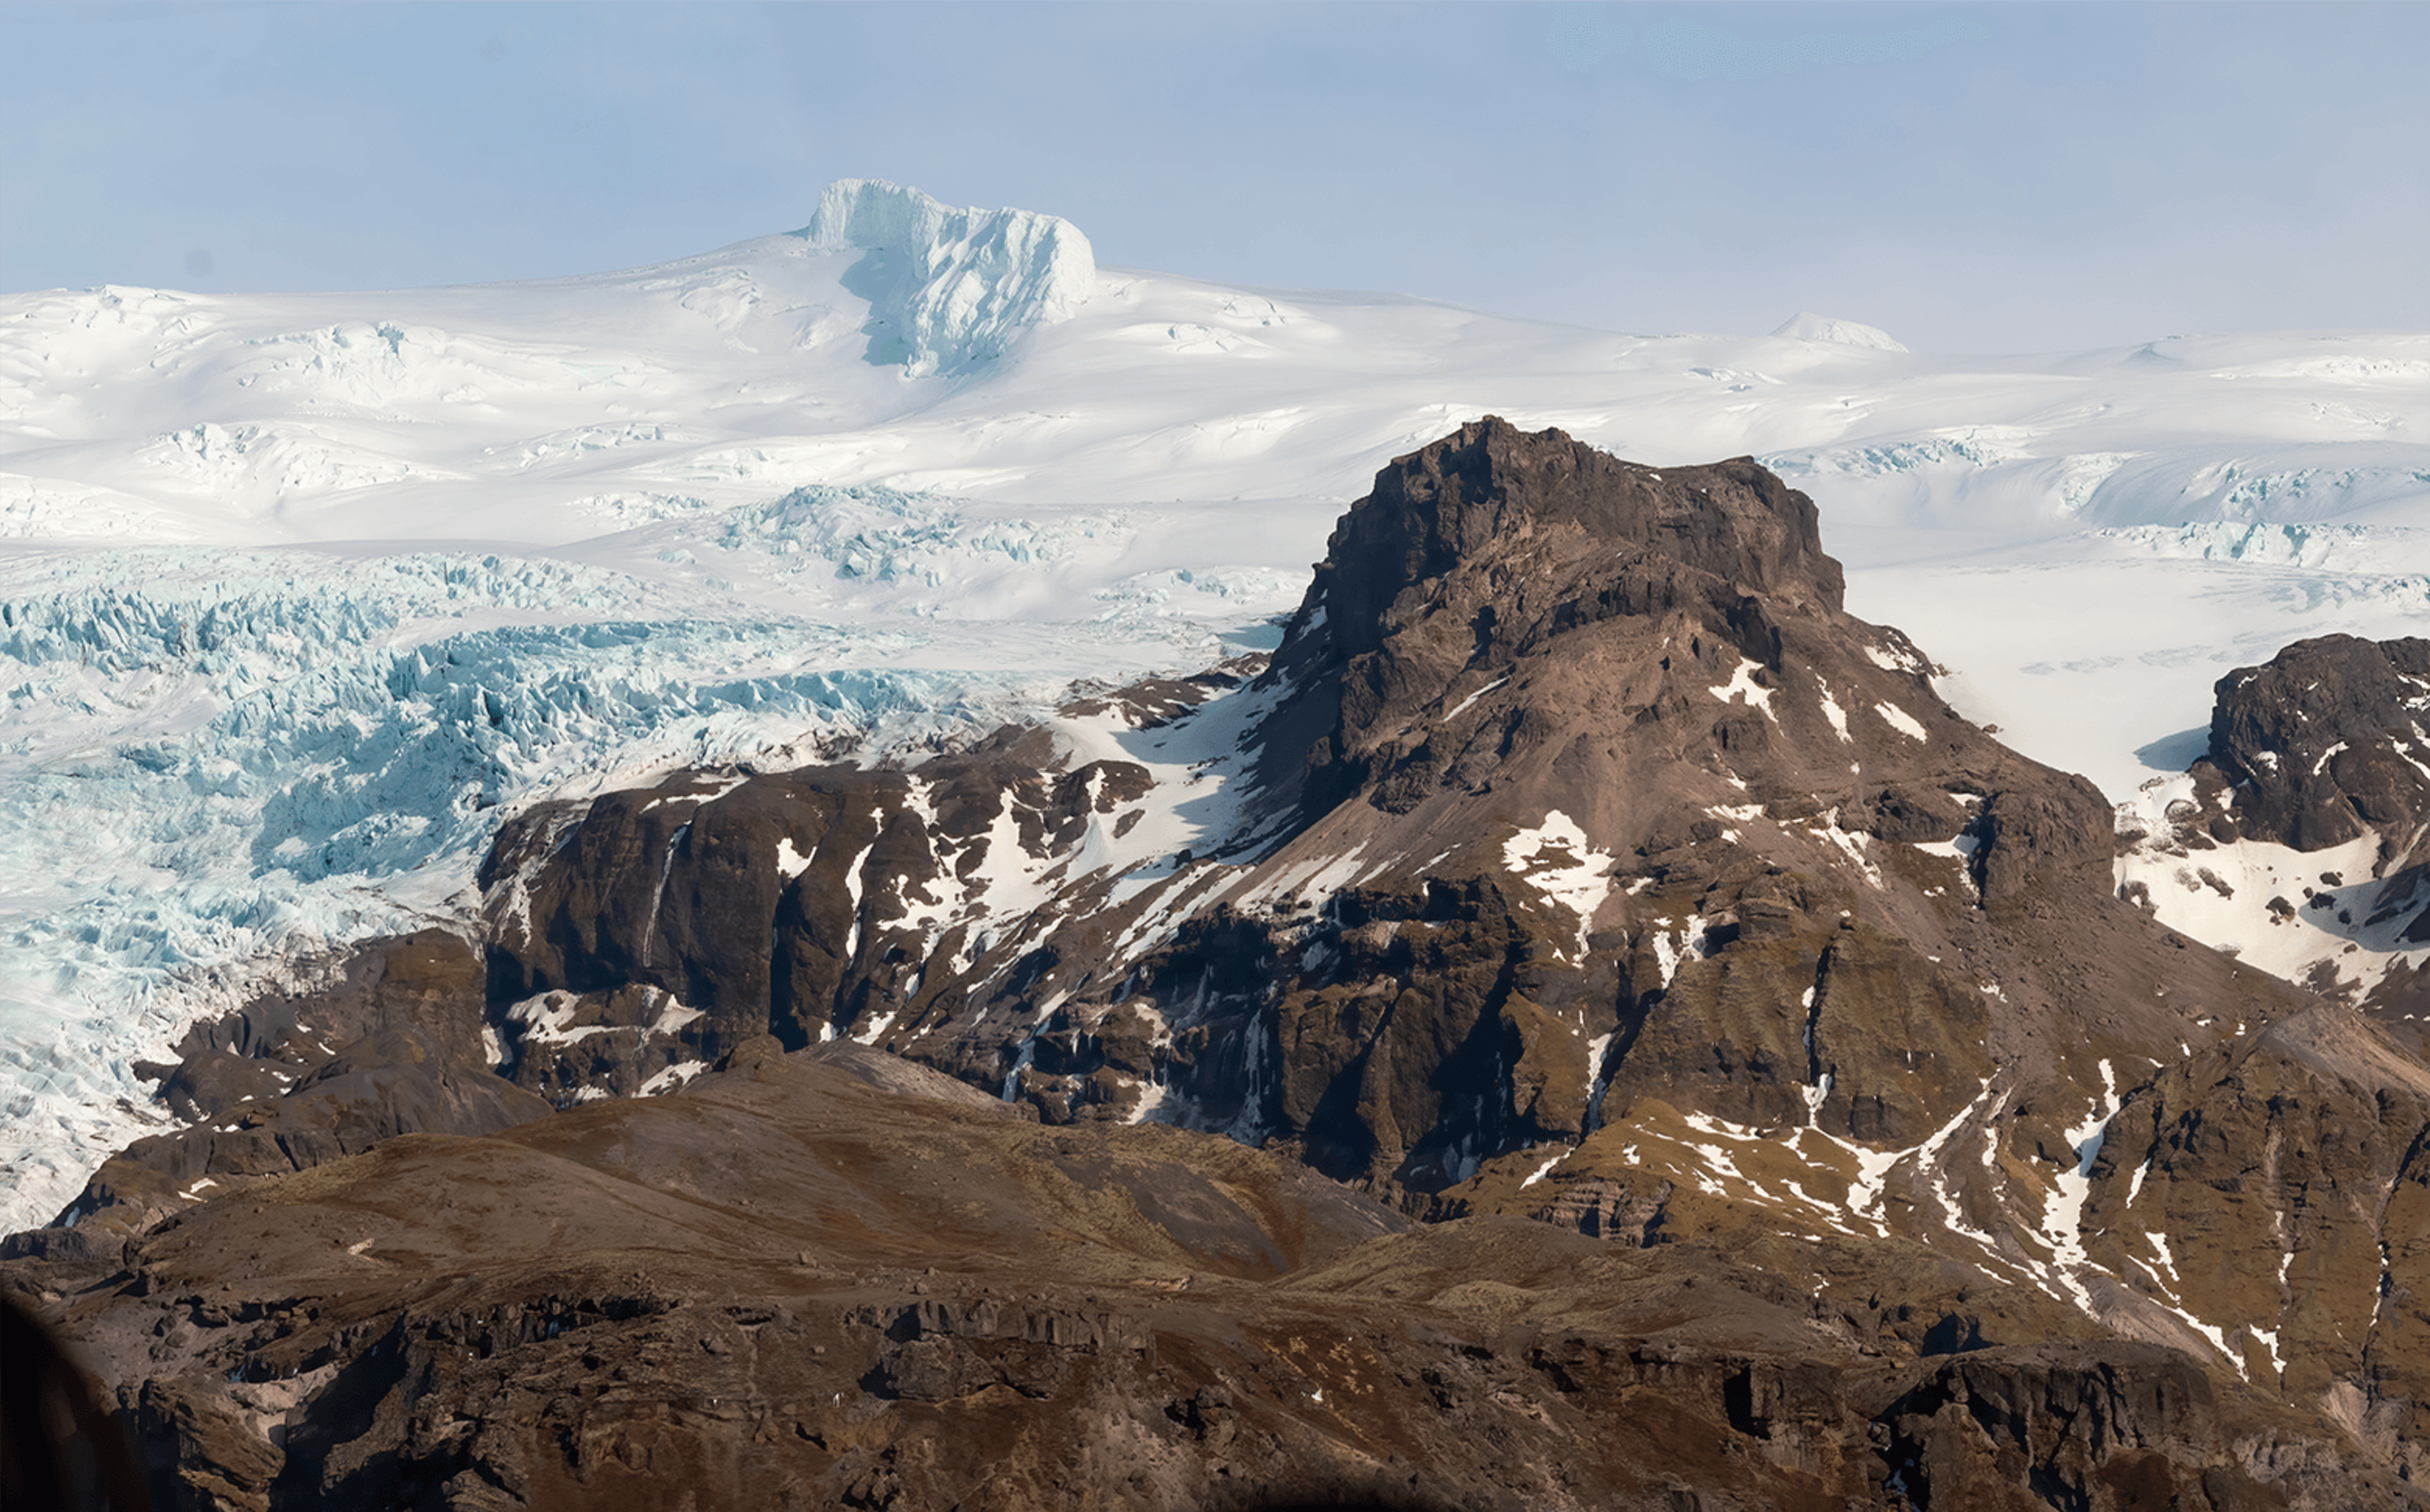 oraefajokull glacier-topped volcano